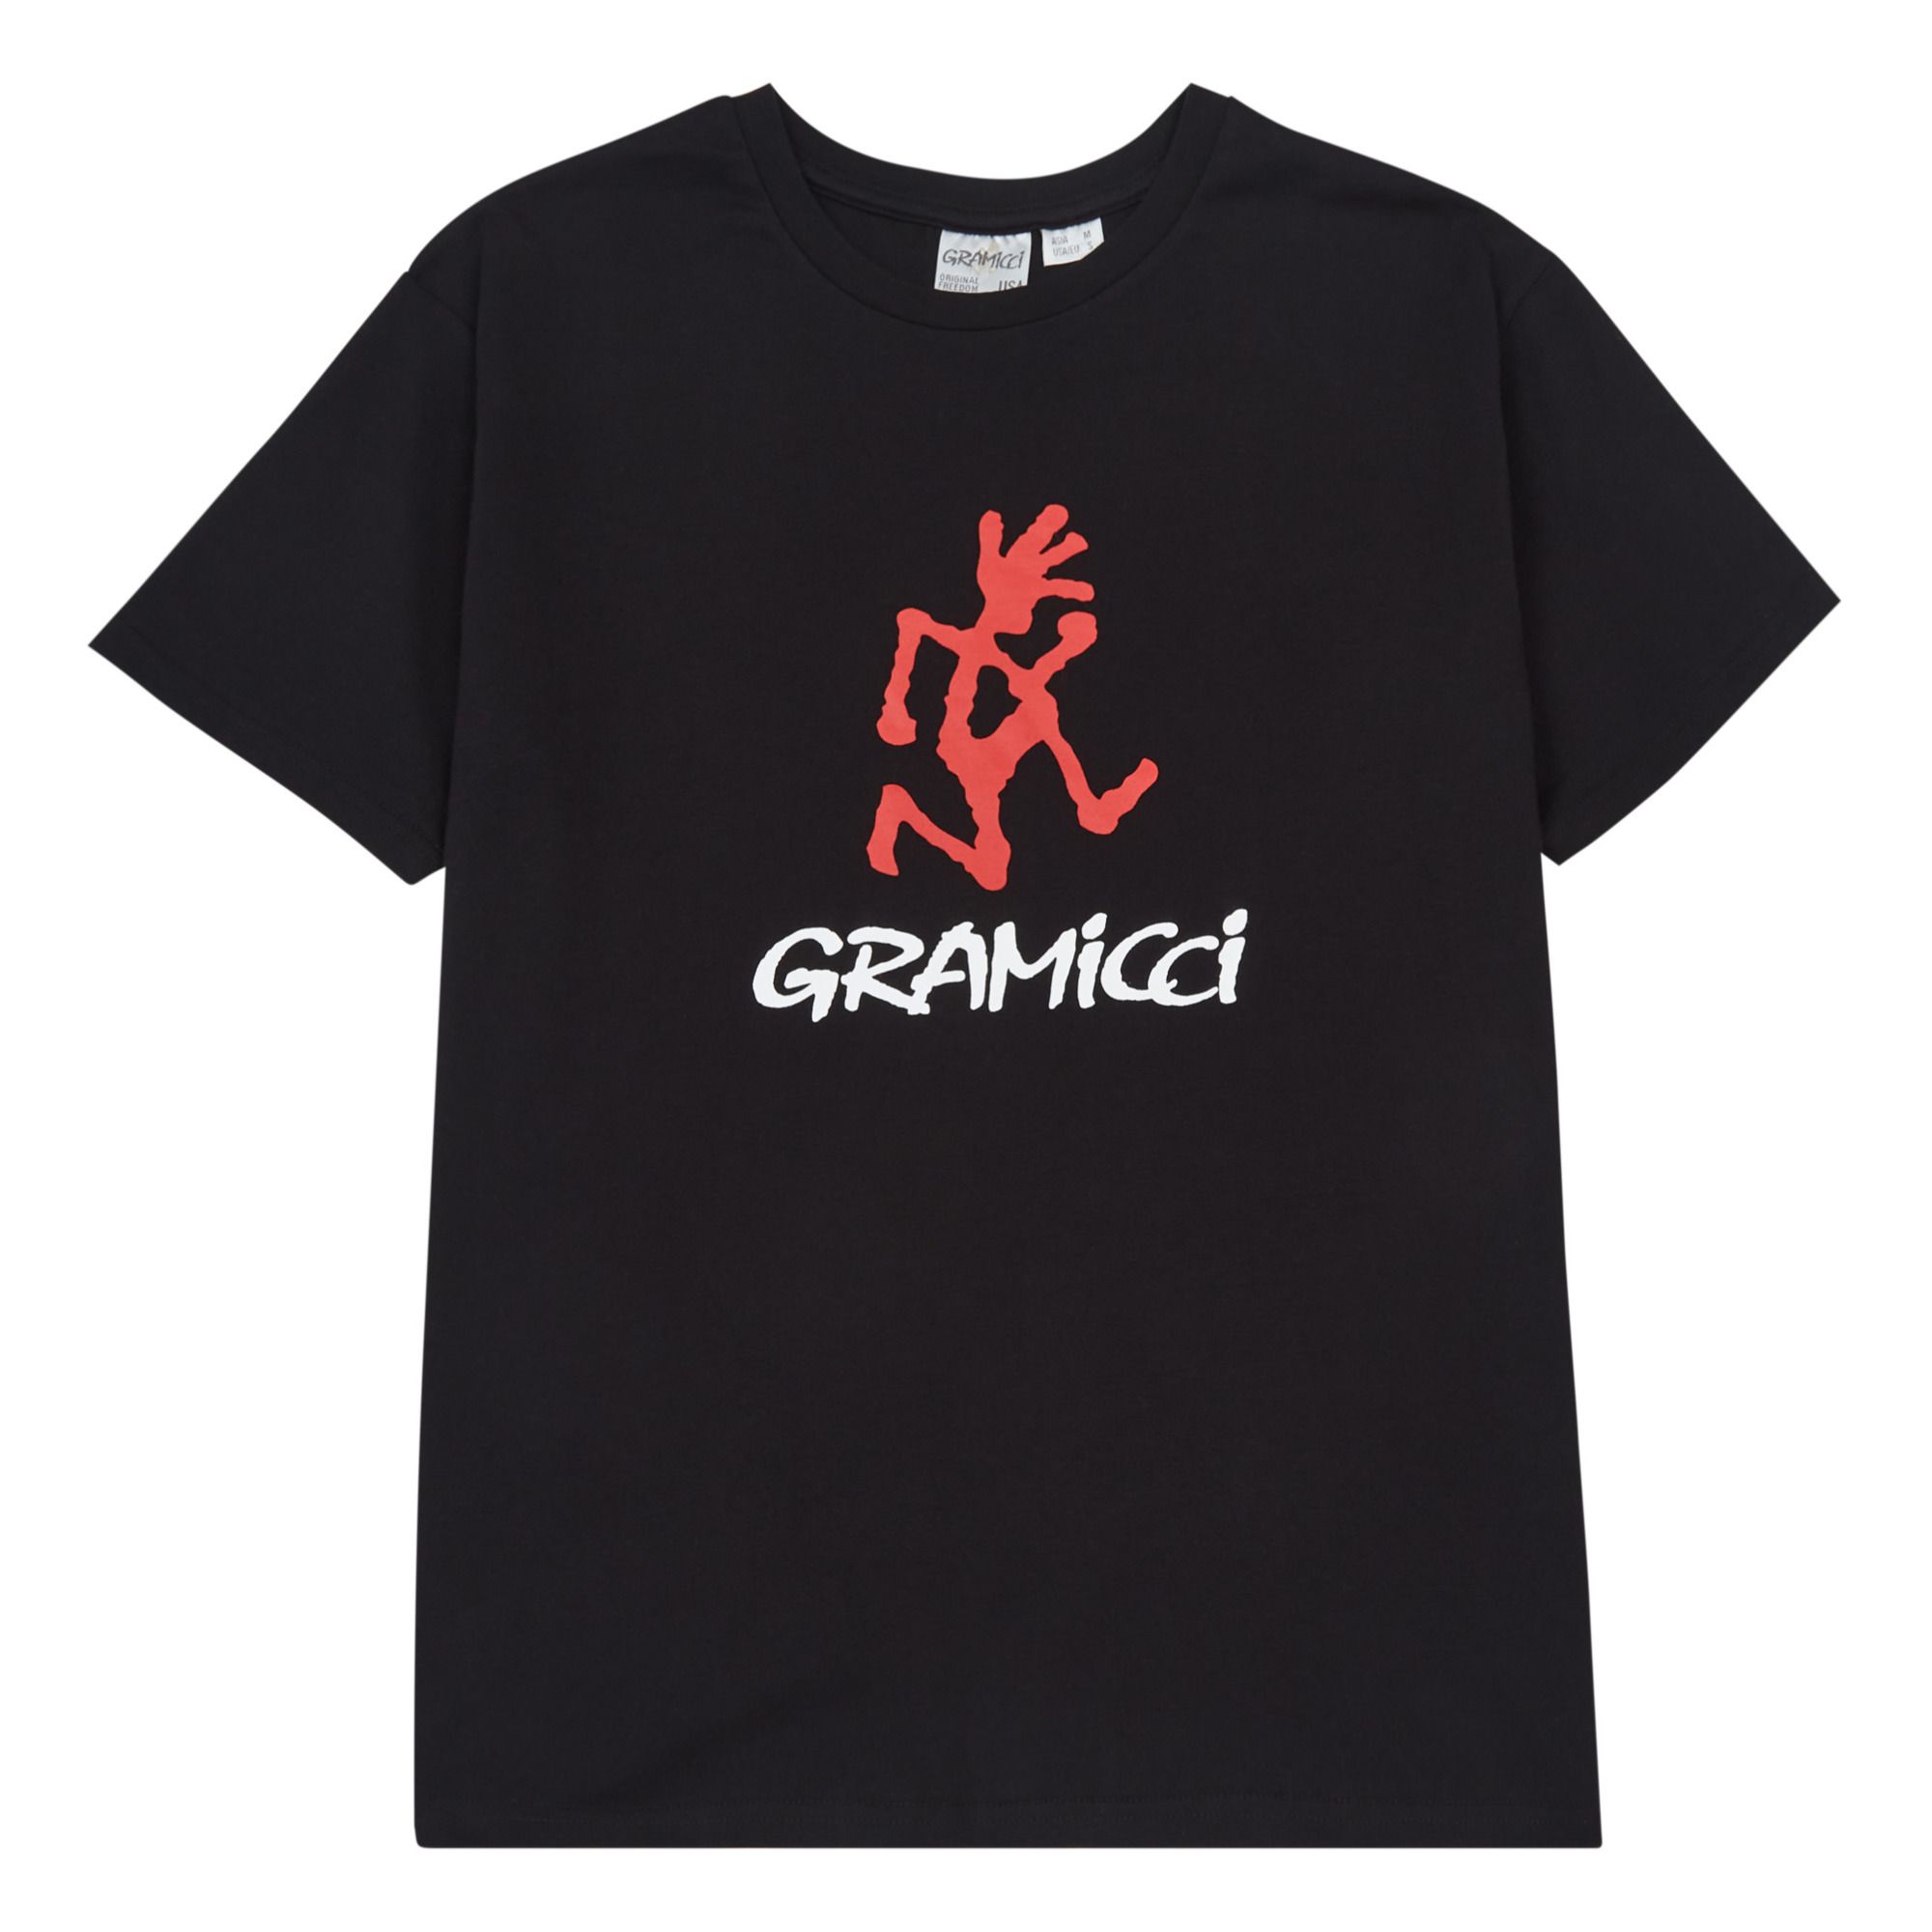 Gramicci - T-shirt Logo - Femme - Noir